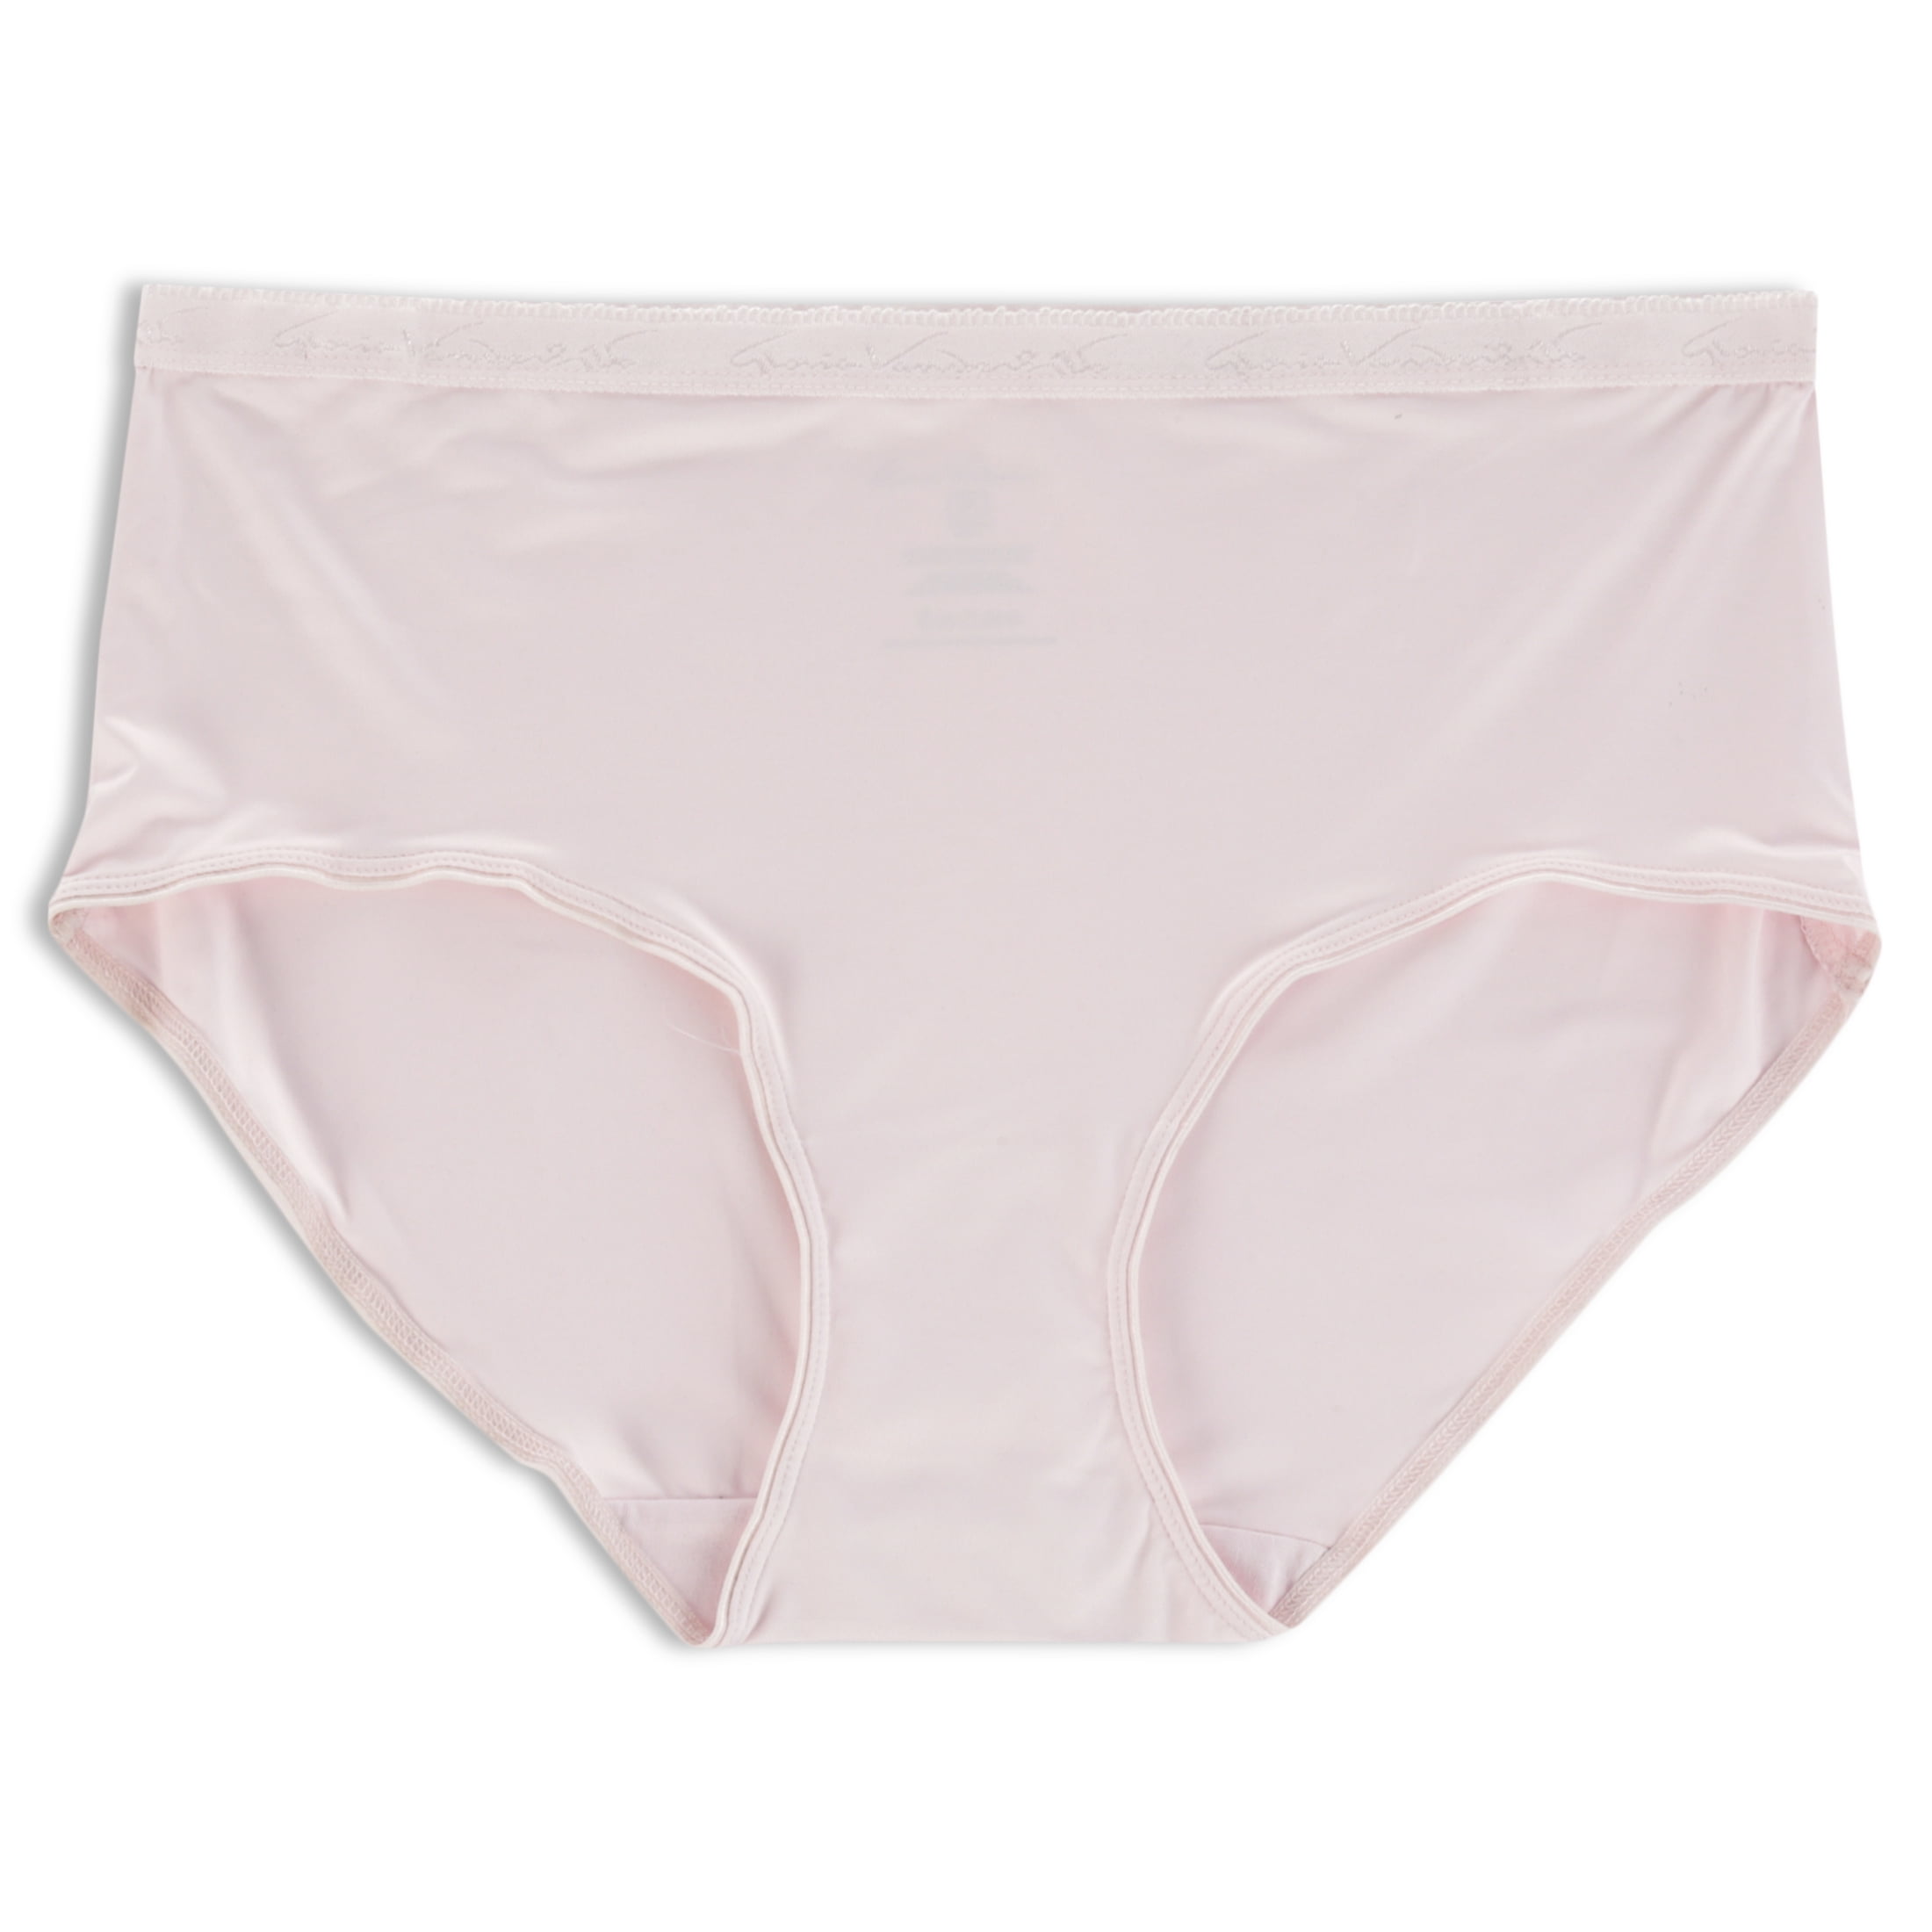 Gloria Vanderbilt Women's Tagfree Cotton Blend Brief Panties, 5-Pack 